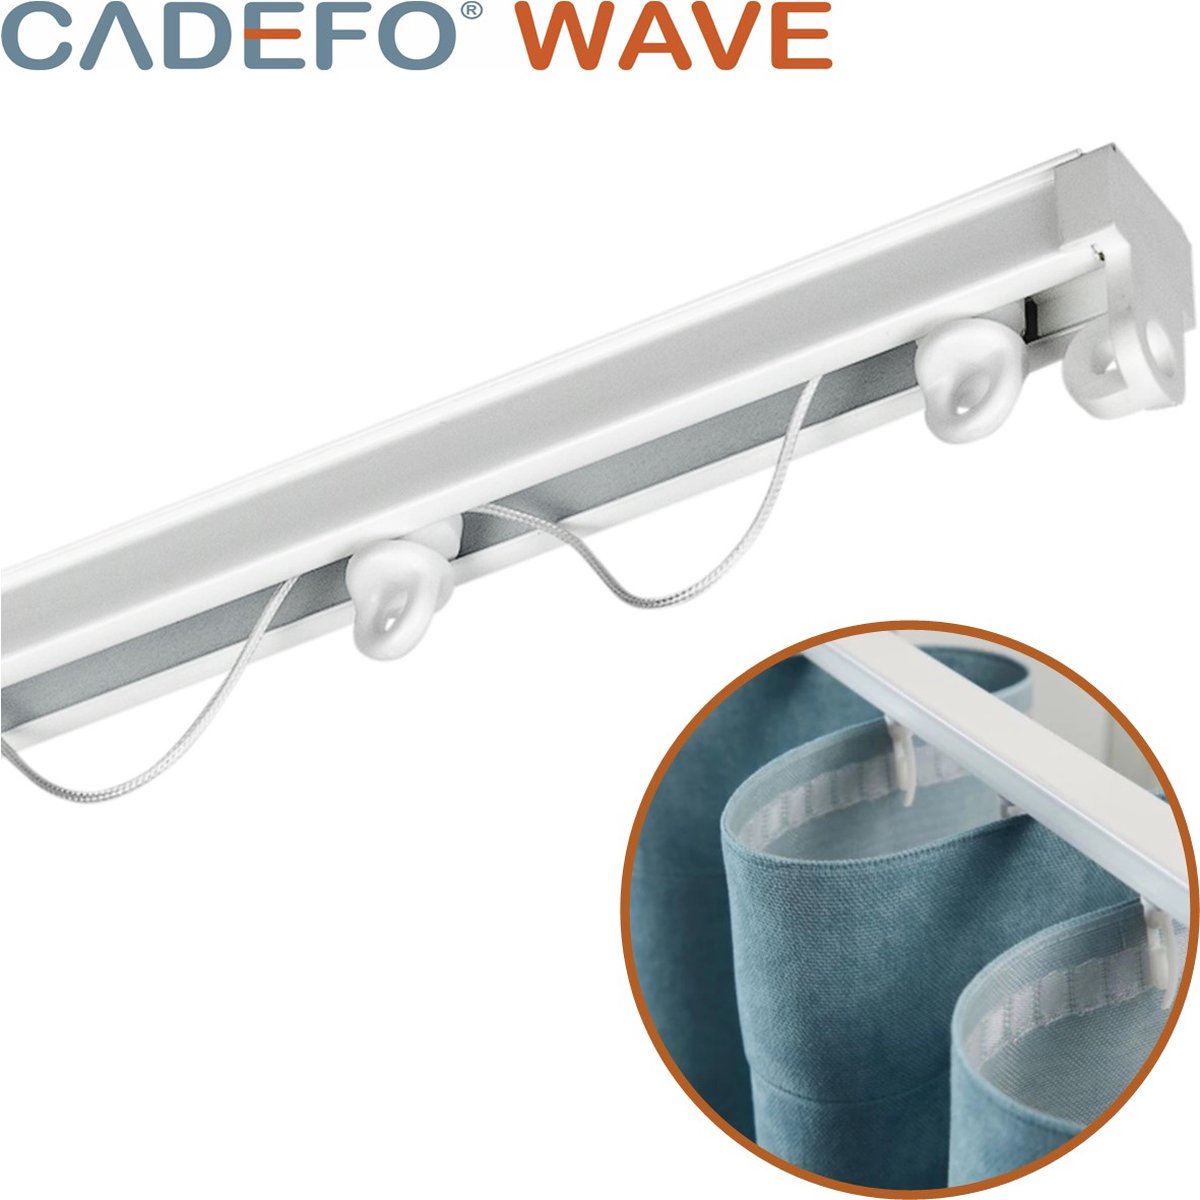 CADEFO WAVE (451 - 500 cm) Gordijnrails - Compleet op maat! - UIT 1 STUK - Leverbaar tot 6 meter - Plafondbevestiging - Lengte 489 cm